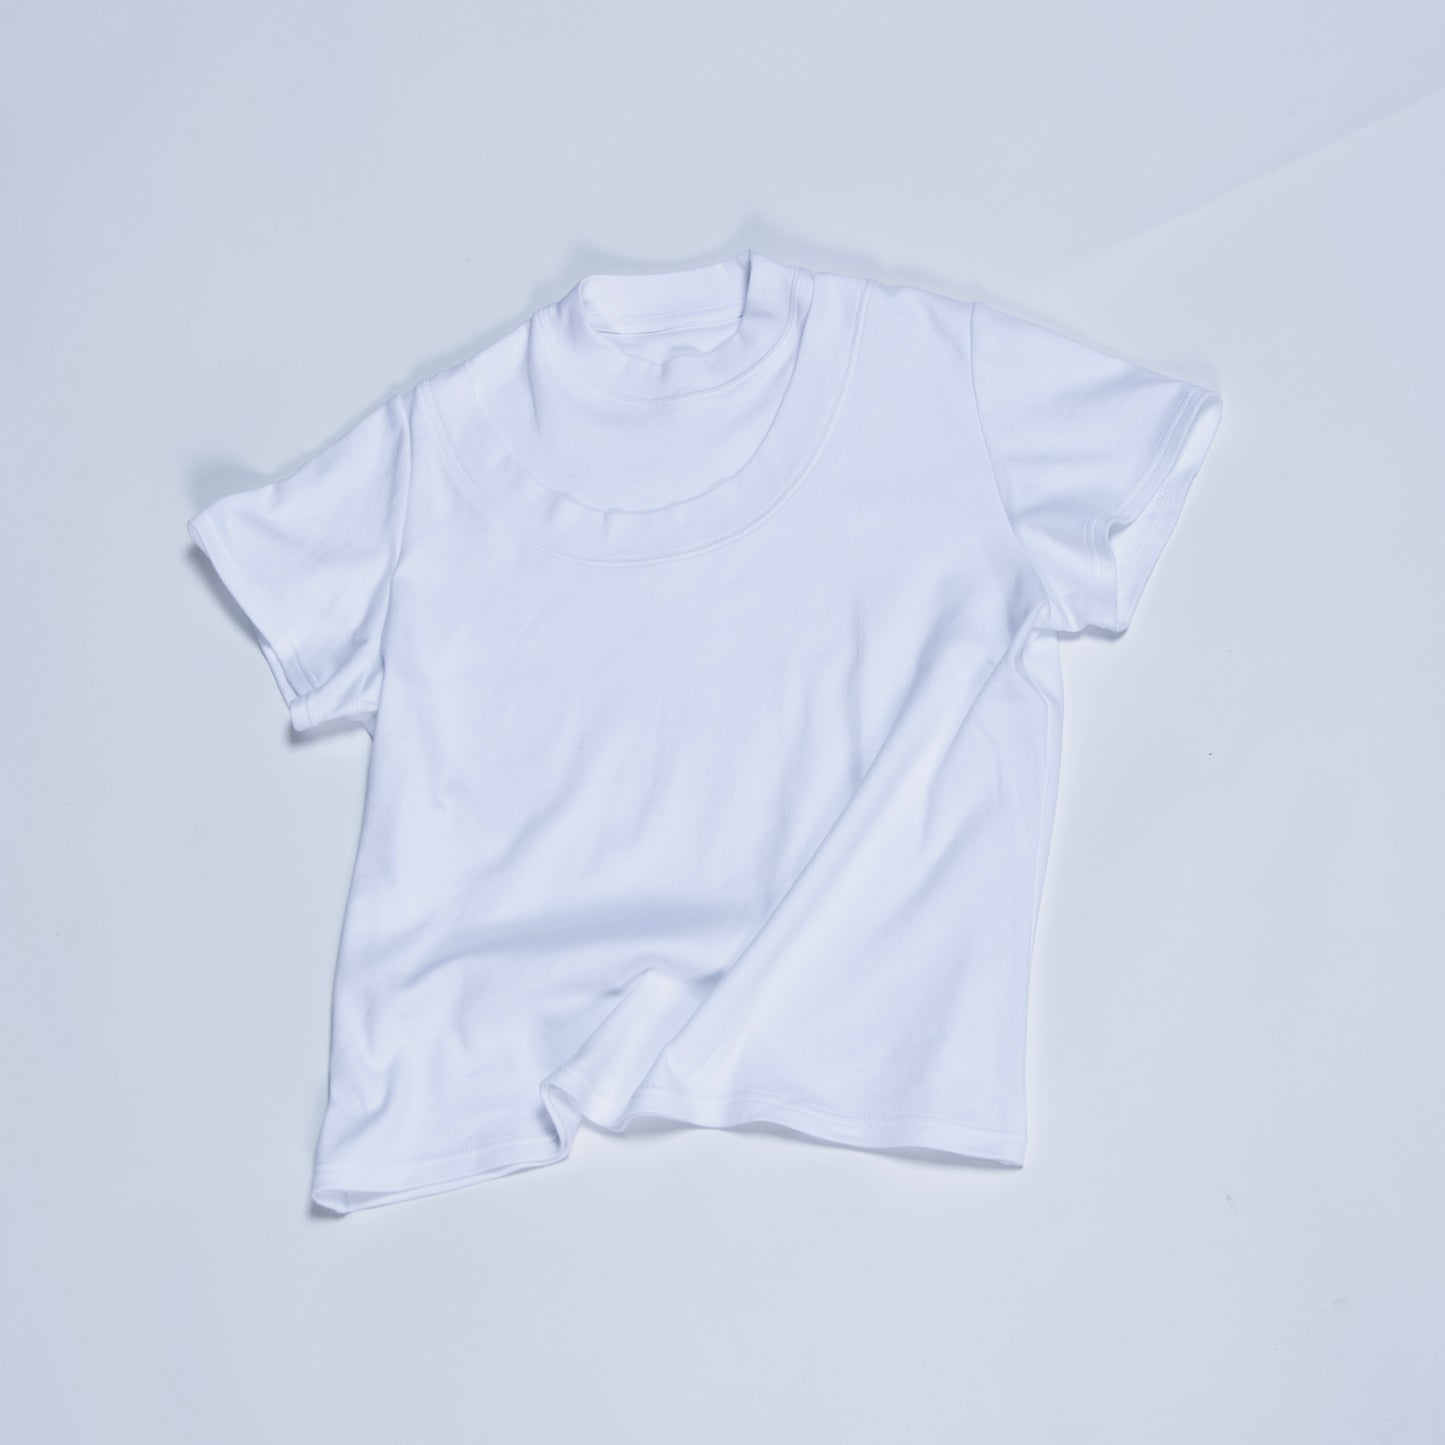 Unisex Double-neck t-shirt